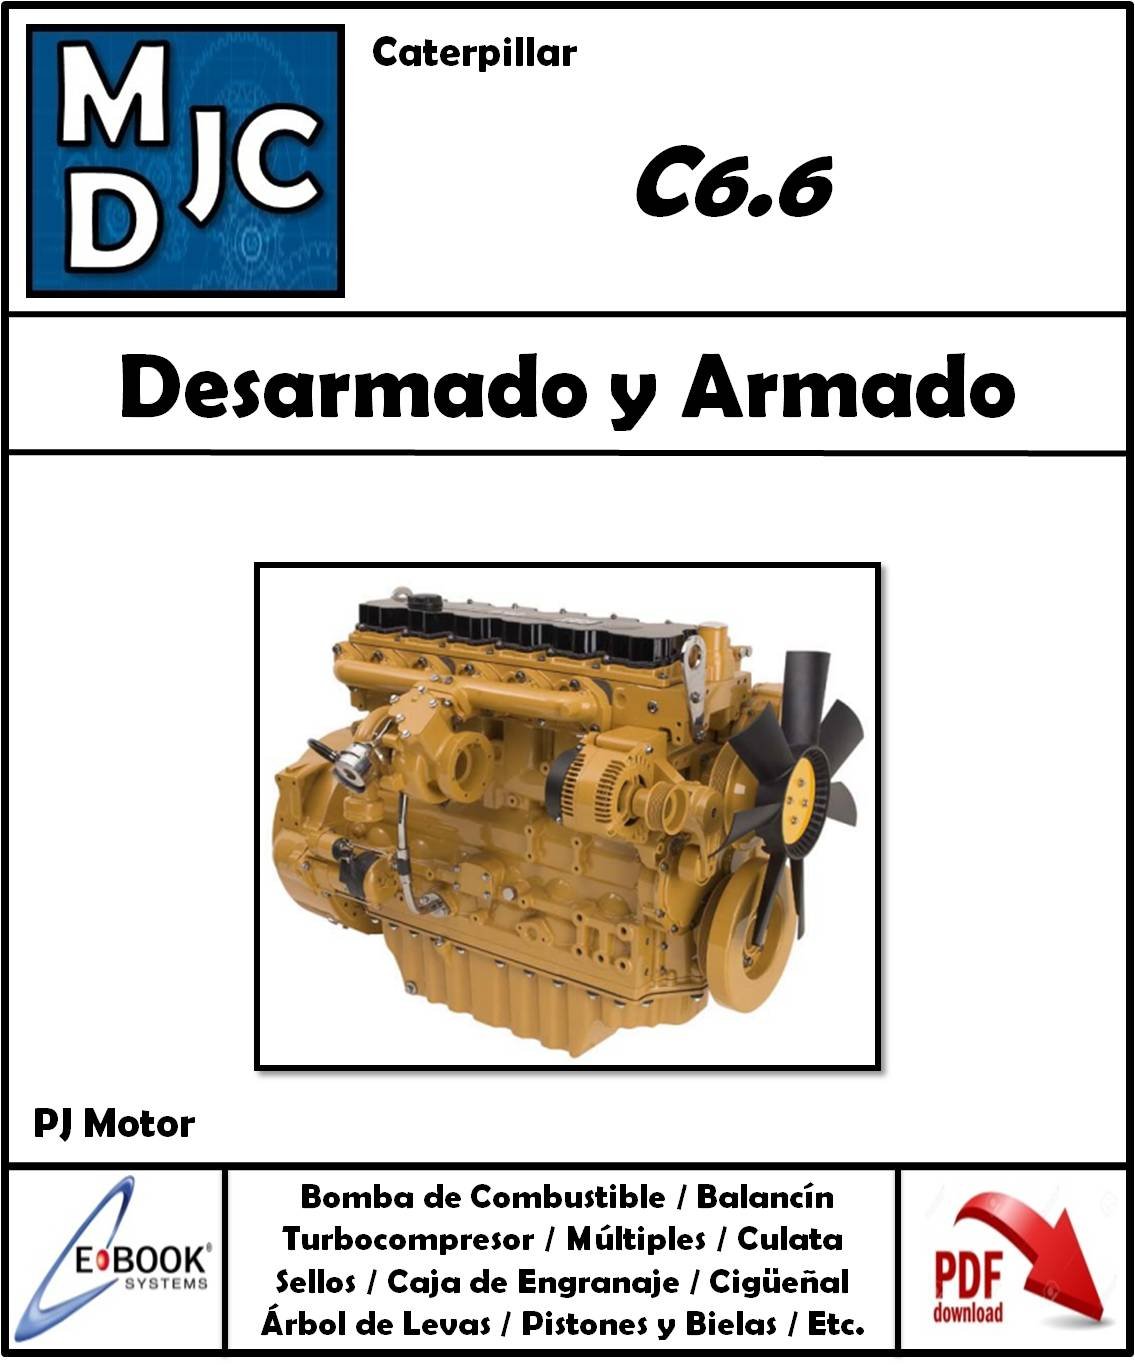 Manual de Taller (Desarmado y Armado) Motor Caterpillar C6.6